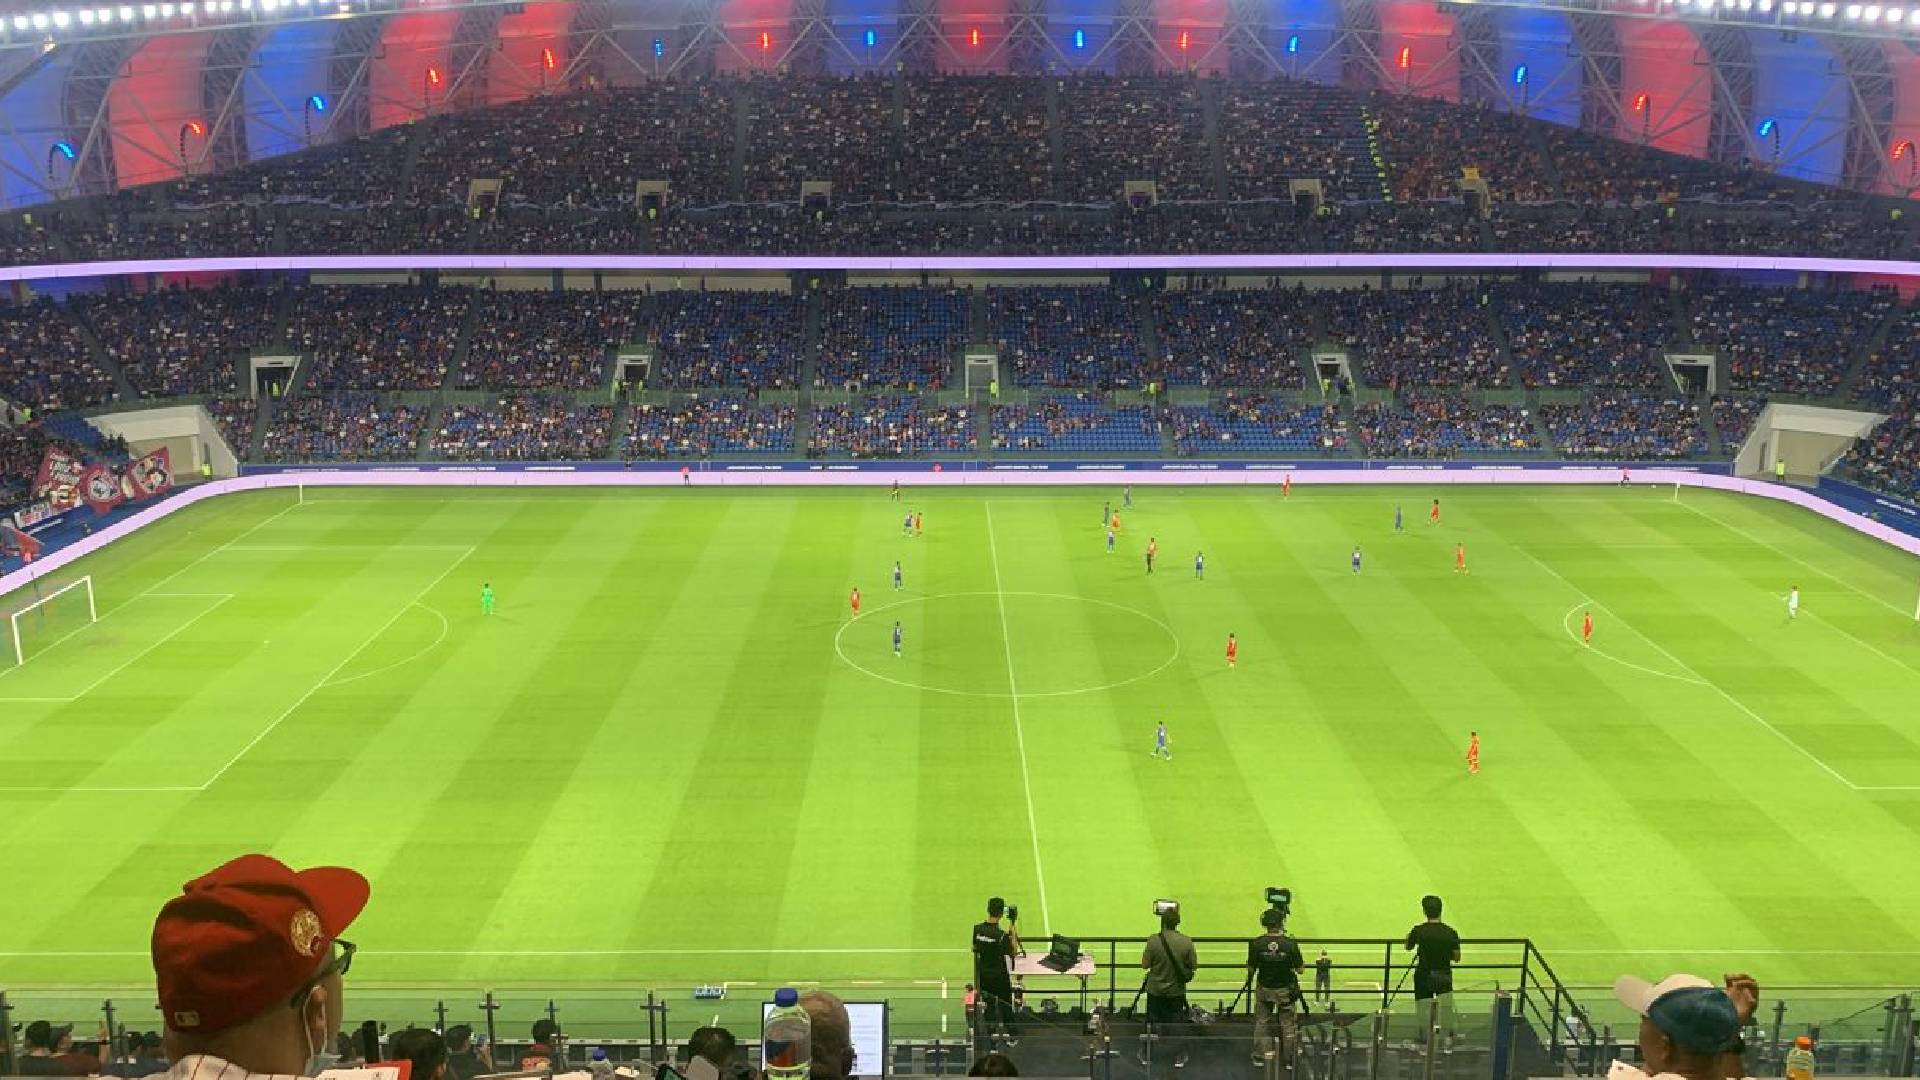 stadium sultan ibrahim jdt vs selangor 2022 alif syazani makanbola Stadium Sultan Ibrahim Catat Rekod Jumlah Kehadiran Tertinggi